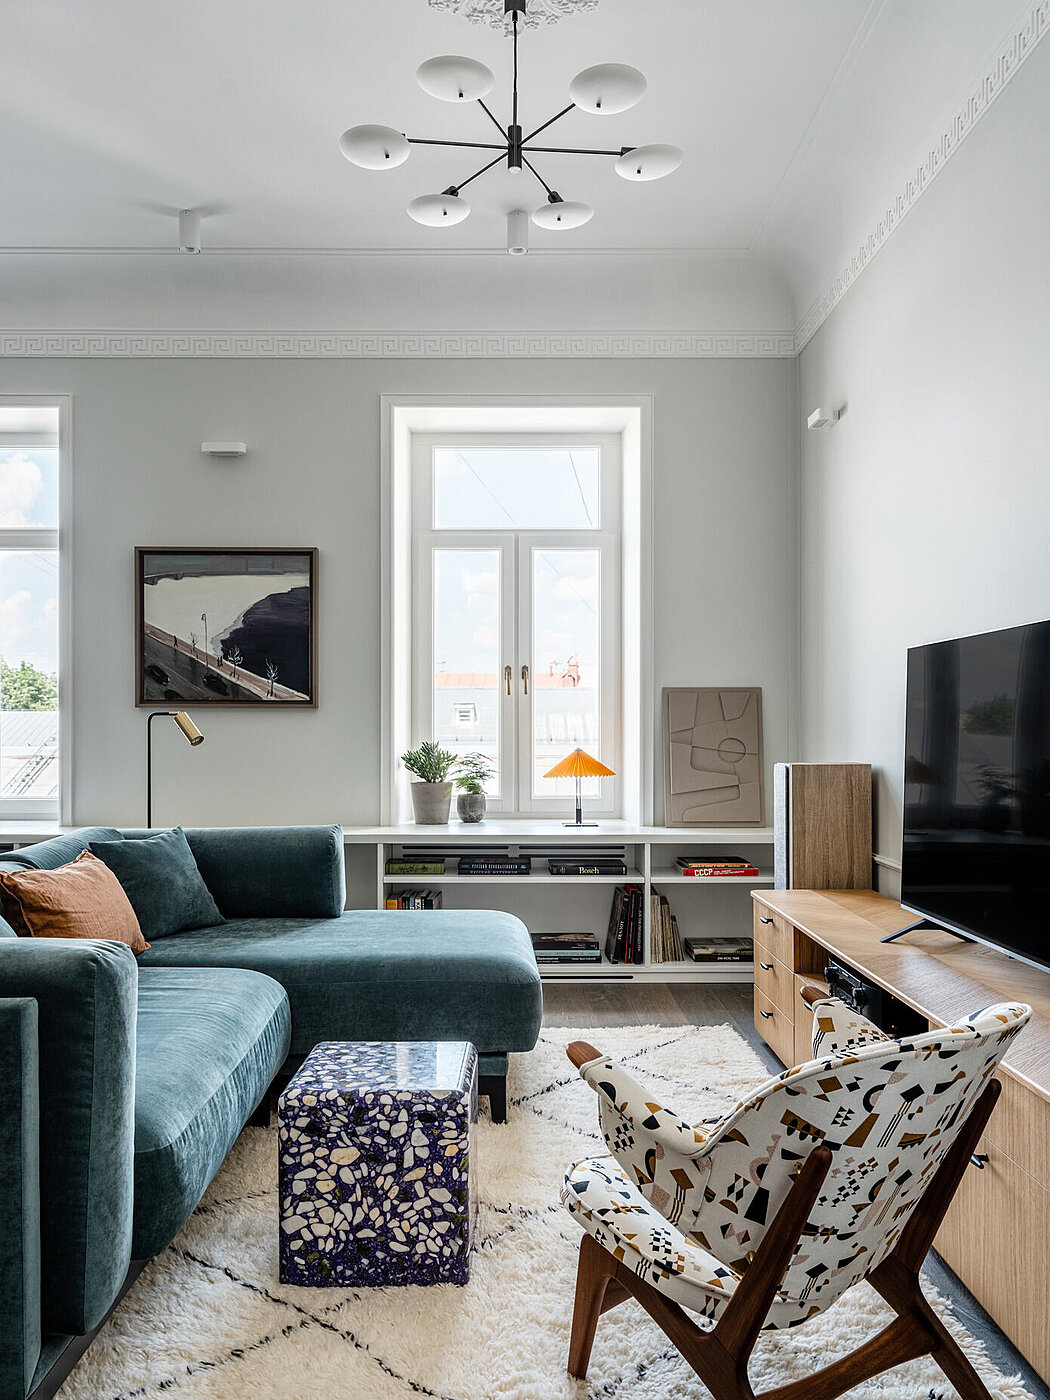 Ostozhenka: A Timelessly Elegant Apartment